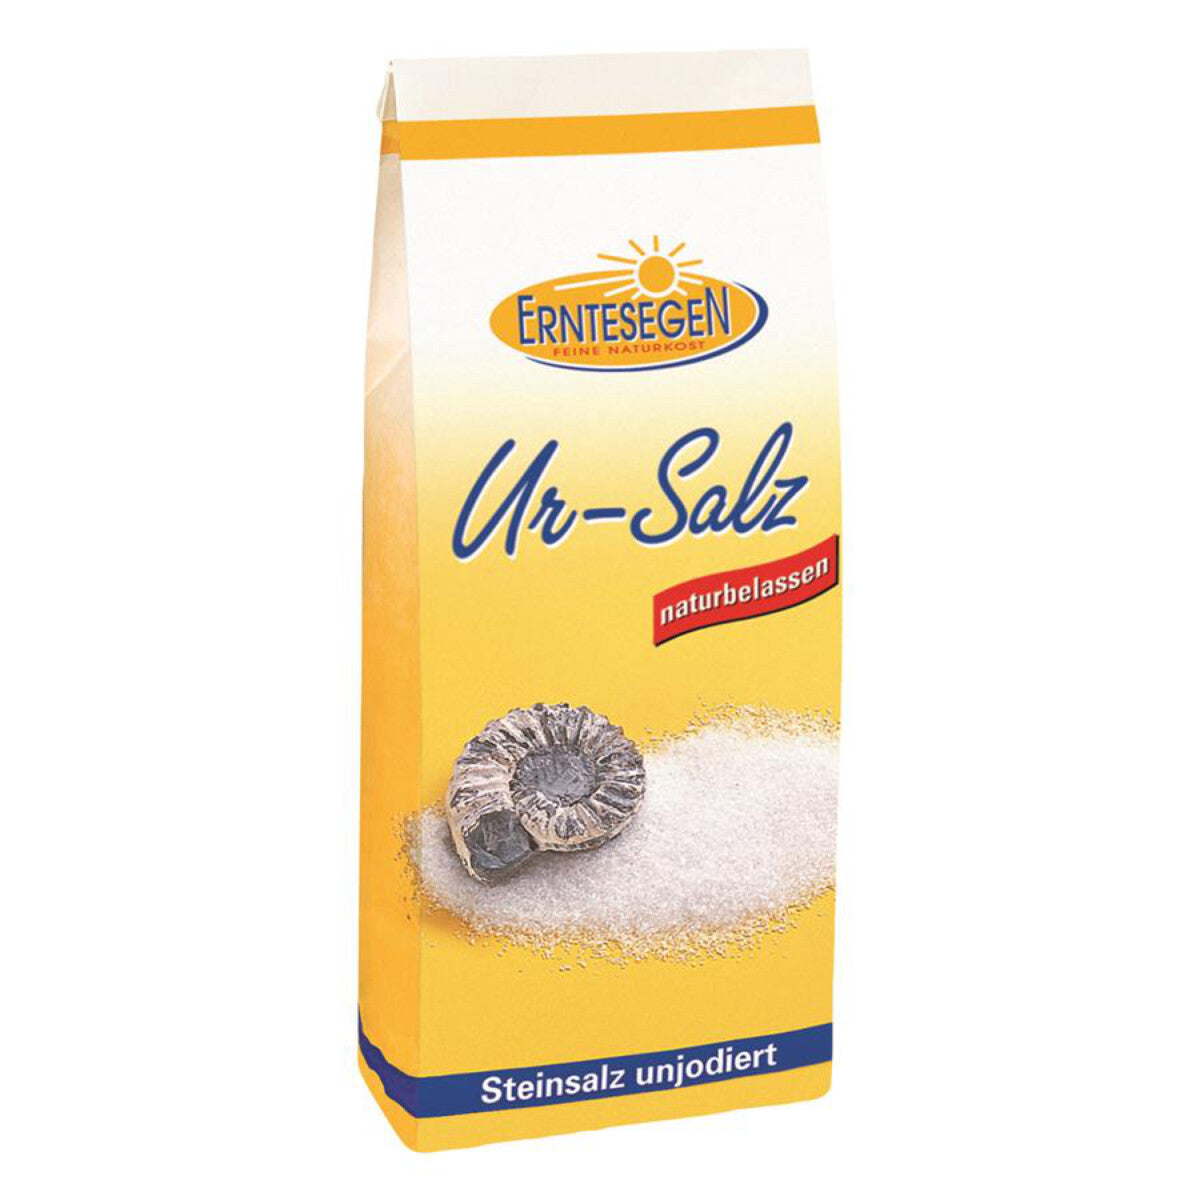 ERNTESEGEN Ur-Salz Vorratsbeutel - 1 kg